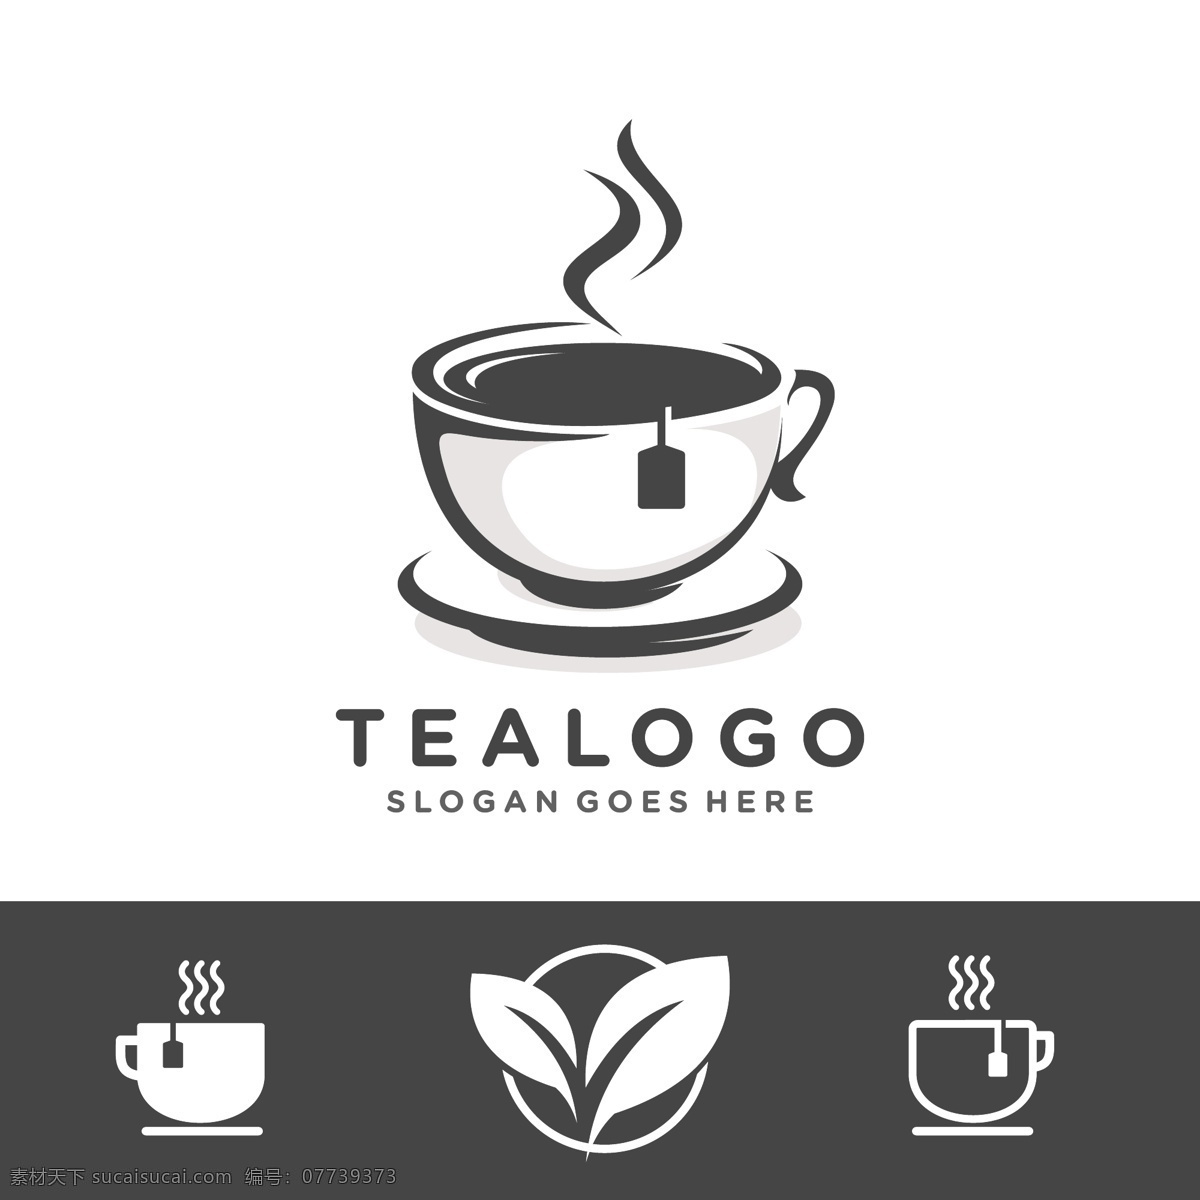 茶叶 logo 矢量 茶叶logo 茶杯矢量素材 茶馆logo 茶园logo 杯子logo 咖啡店 奶茶店 杯子矢量 图标 标志图标 其他图标